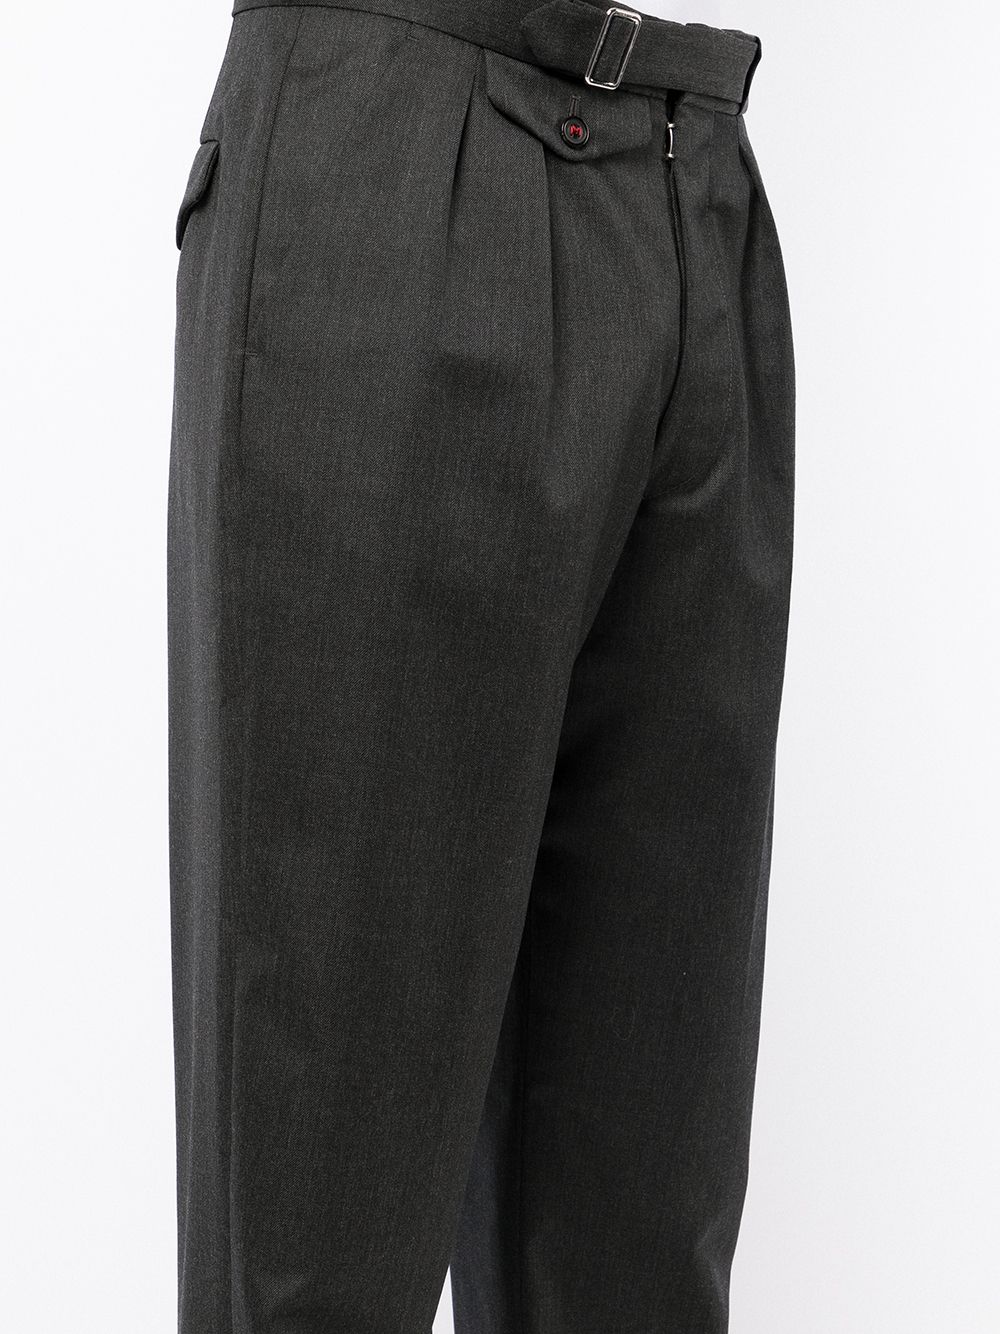 фото Maison margiela прямые шерстяные брюки со складками